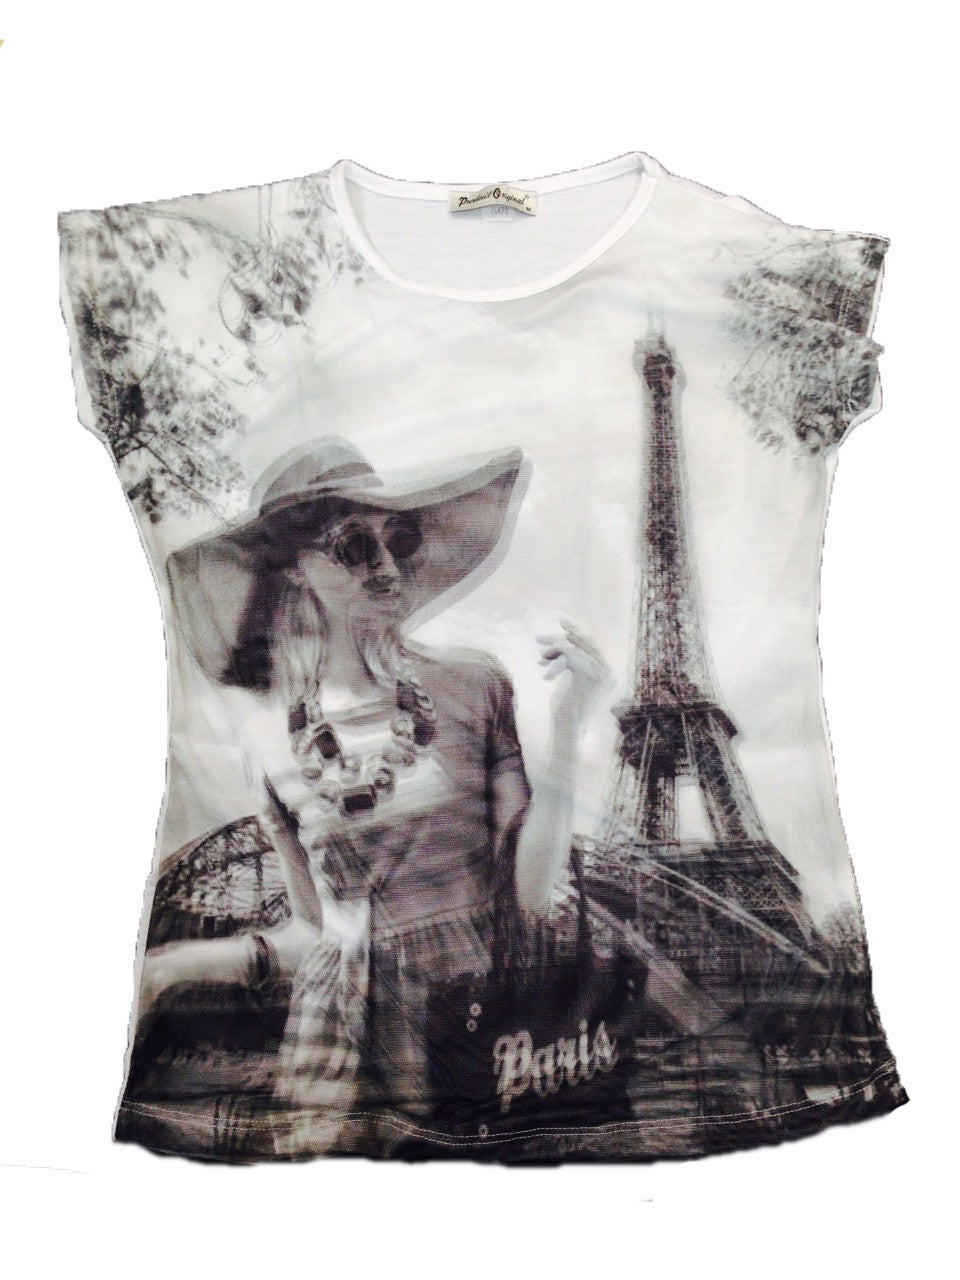 Tee shirt 3D souvenir de Paris Tour Eiffel